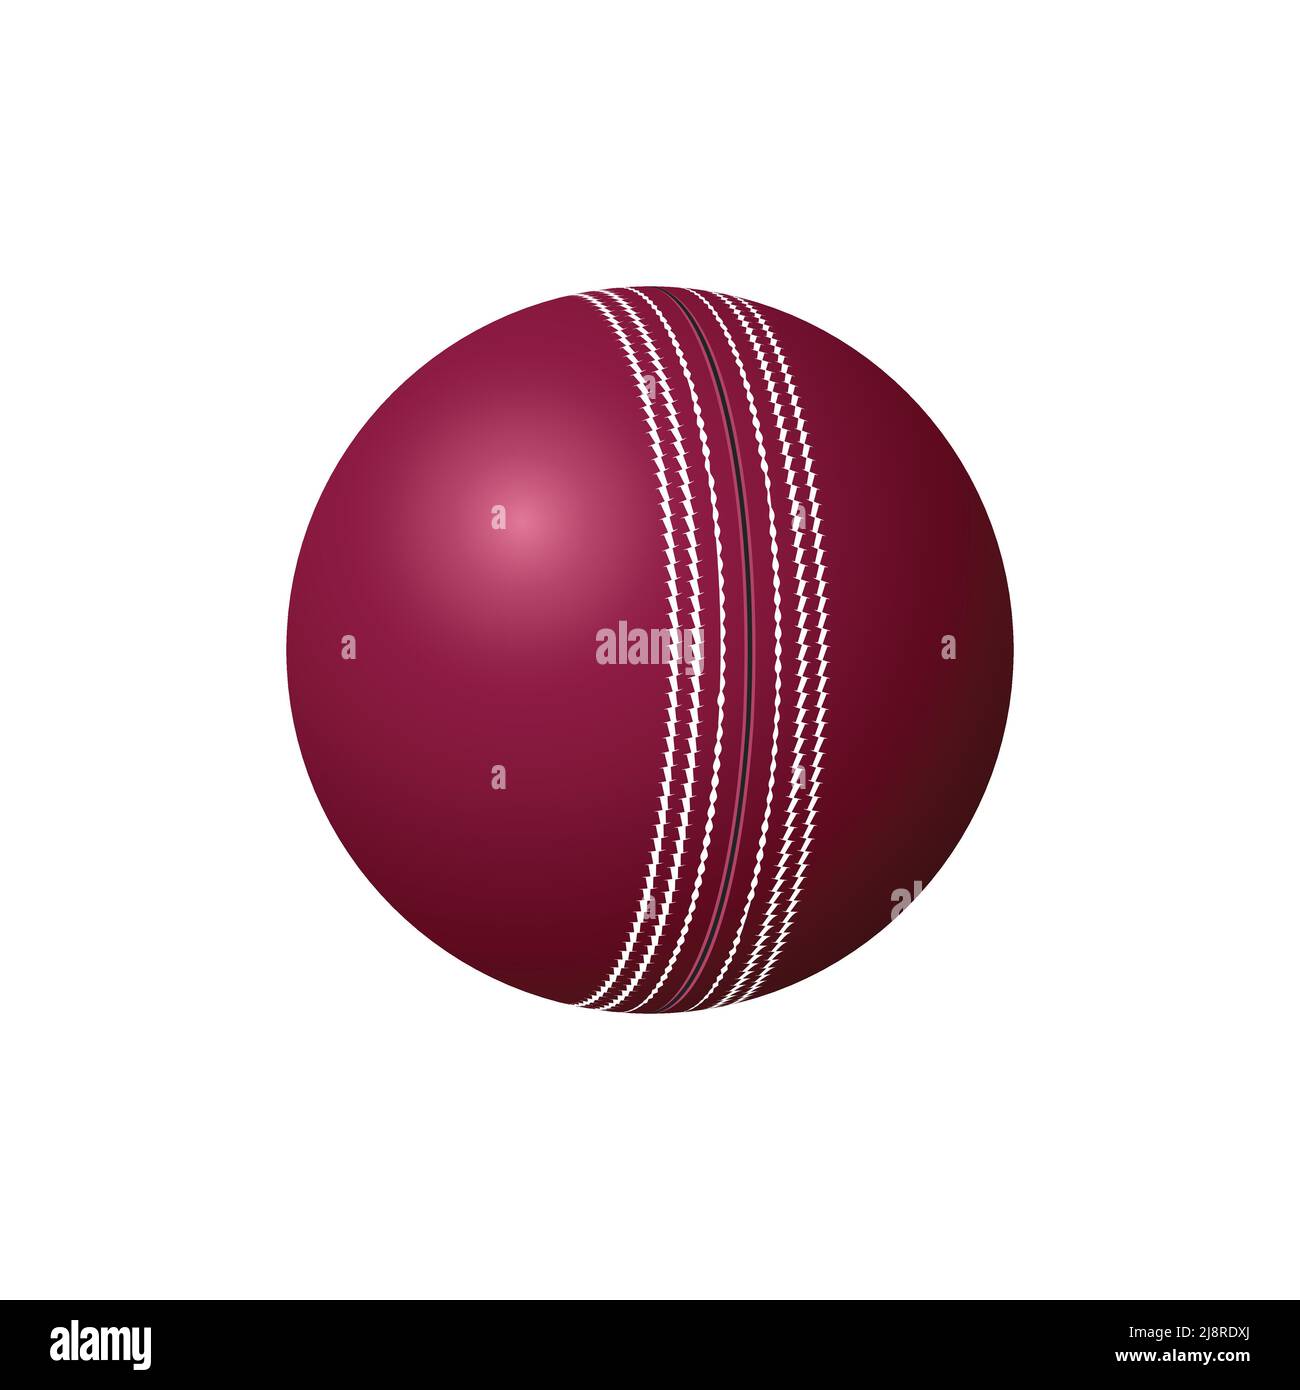 Test Cricket Lederball, realistischer Vektor Stock Vektor